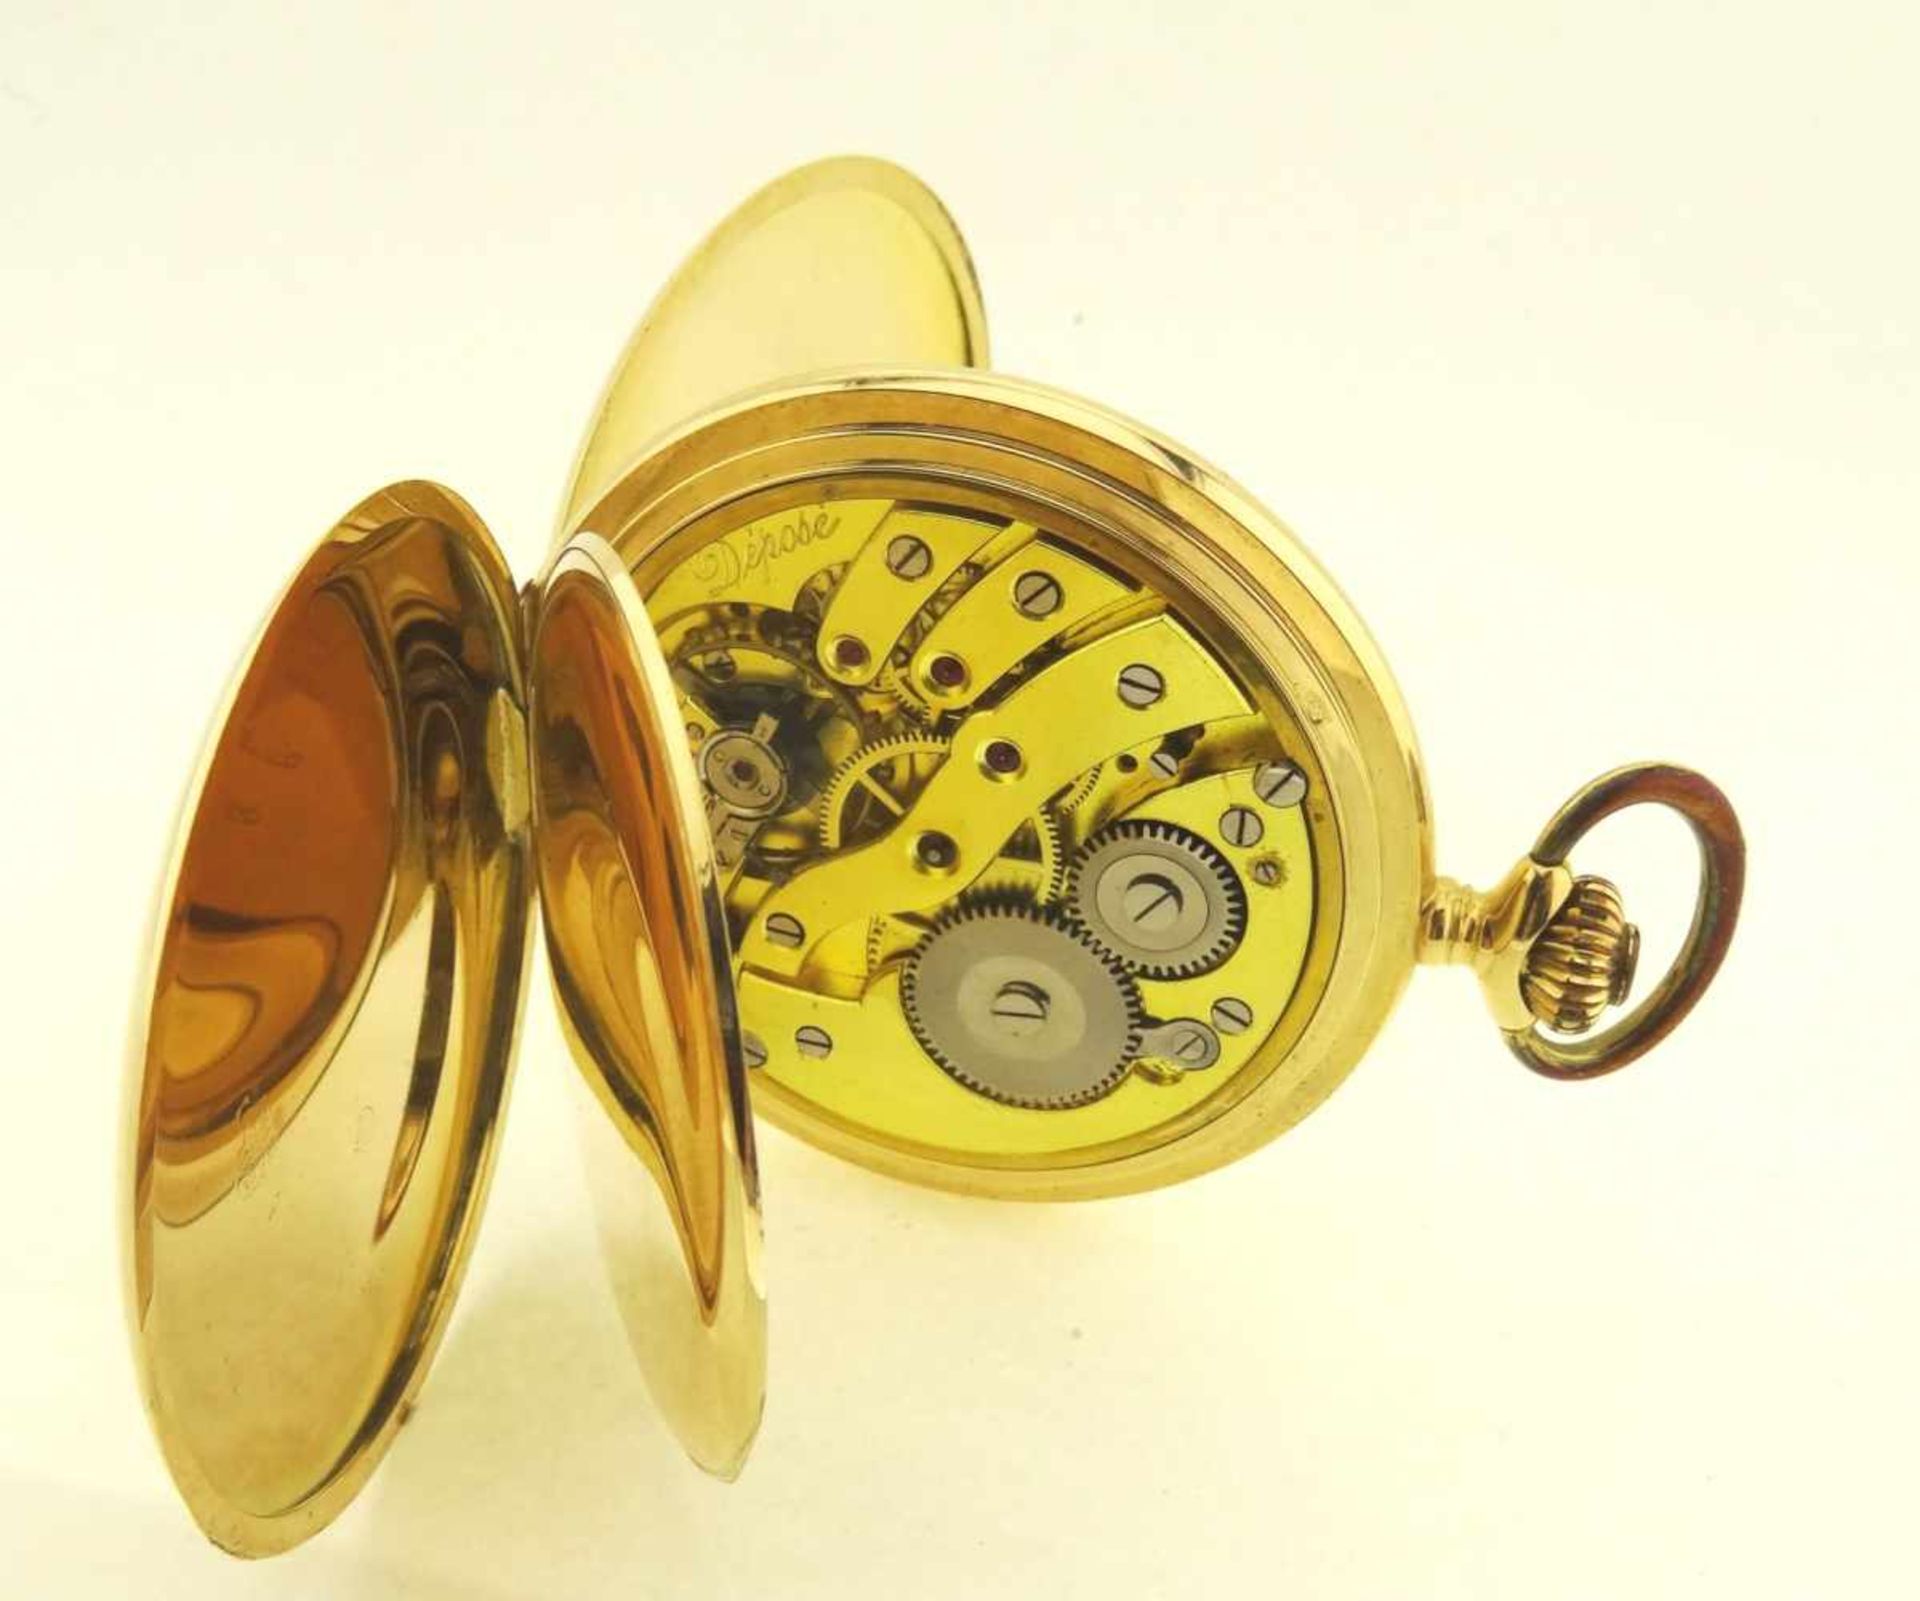 Sprungdeckeltaschenuhr Gold 585 mit 3 Deckeln in Gold 585, Uhrwerk mit Ankerhemmung läuft gut, - Bild 3 aus 6